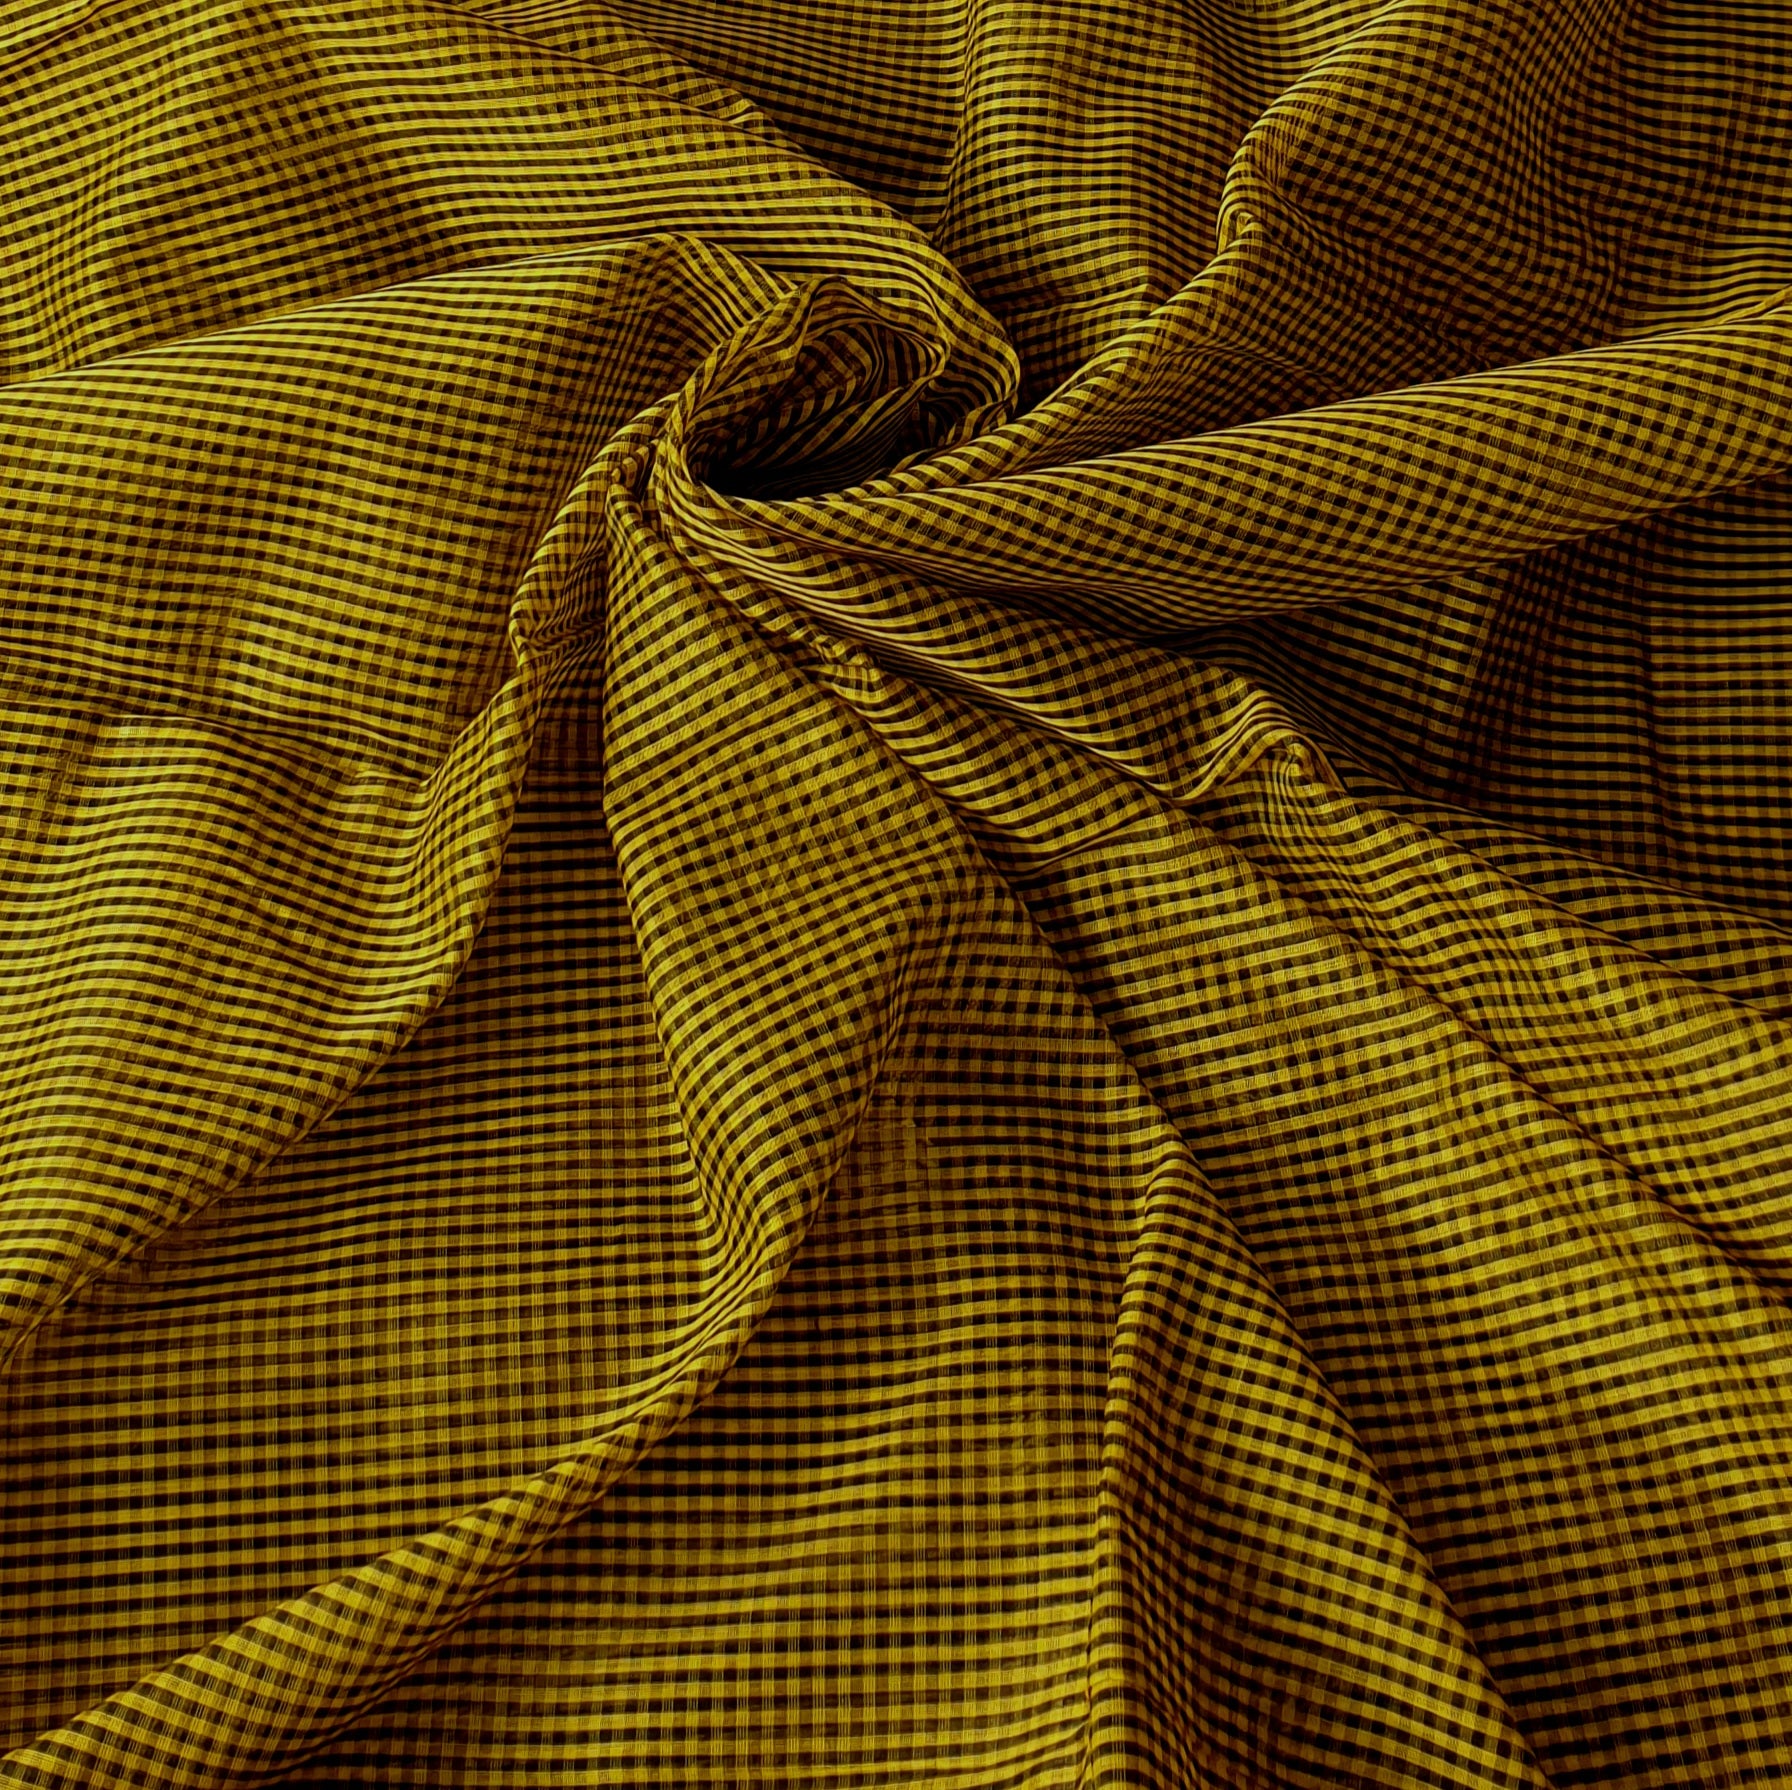 4×4 Checks running Fabrics in Yellow and Black.